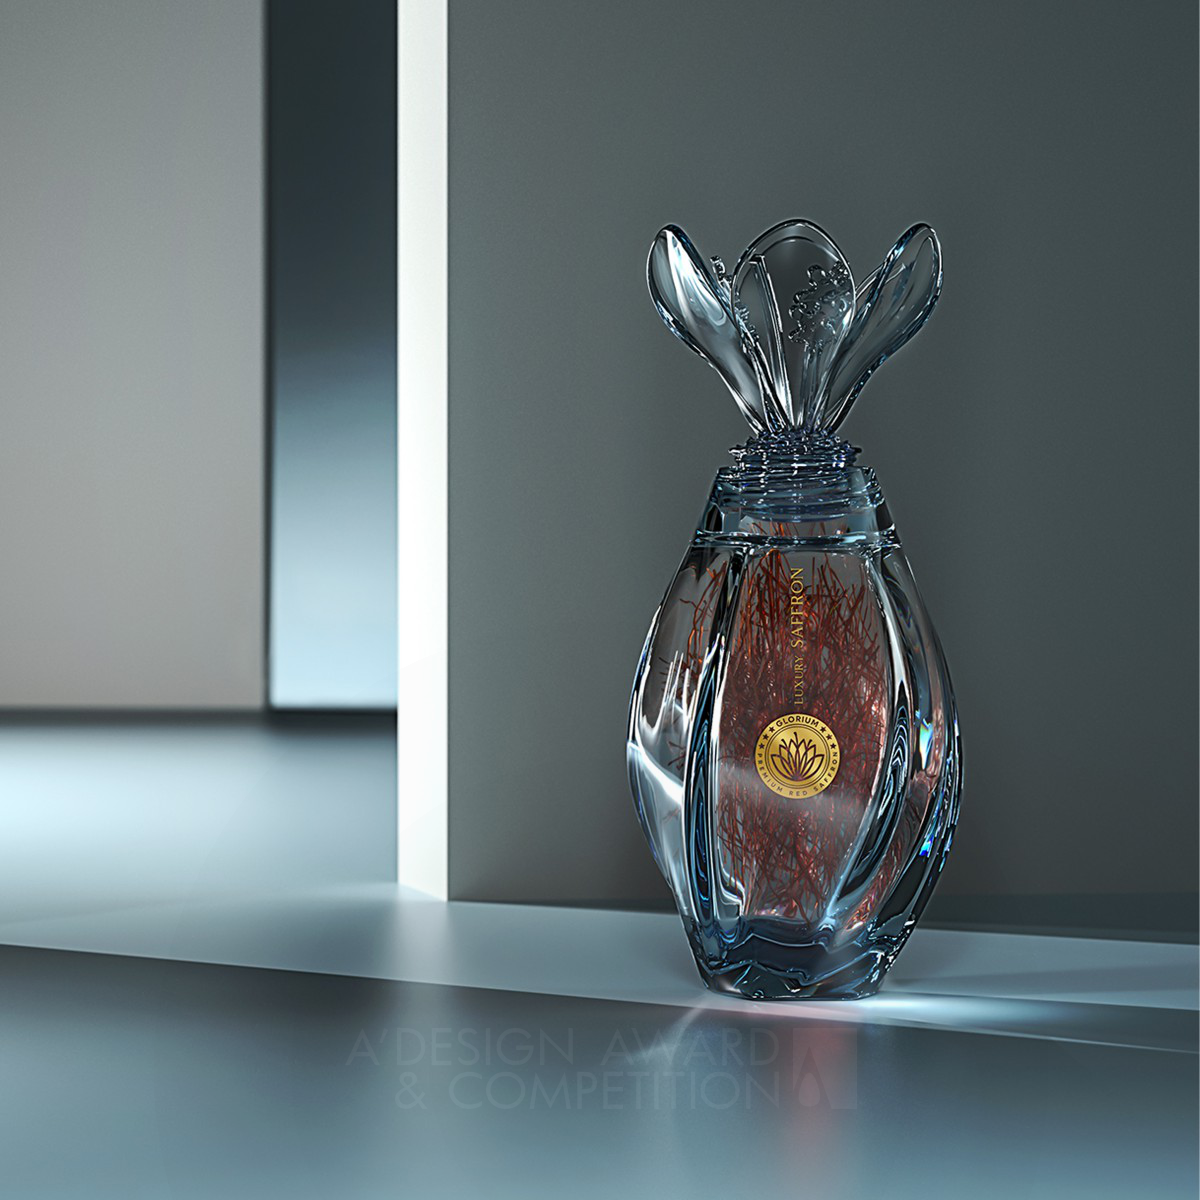 Arvin Maleki's Glorium: Saffron Packaging Redefined